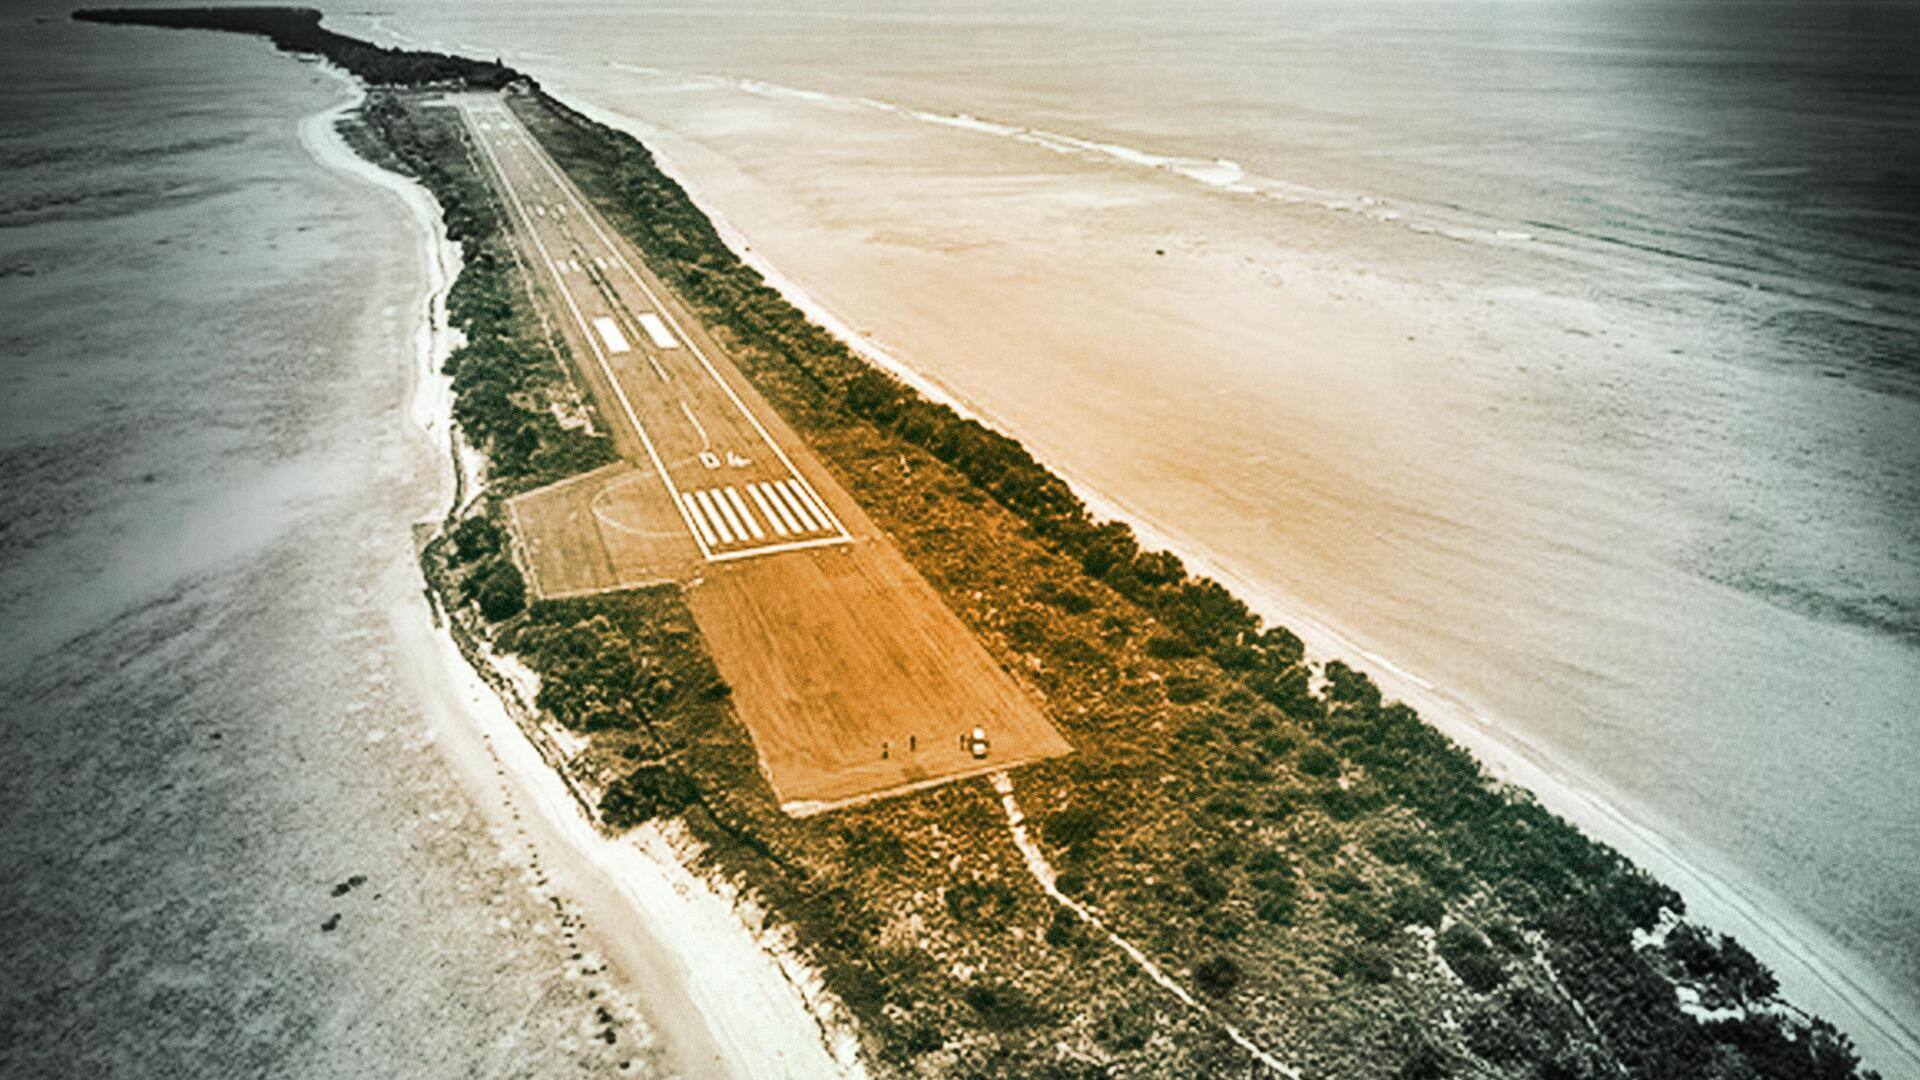 लक्षद्वीप में बनेगा नया हवाई अड्डा, पर्यटन के साथ-साथ भारत को प्रदान करेगा सैन्य रणनीतिक बढ़त